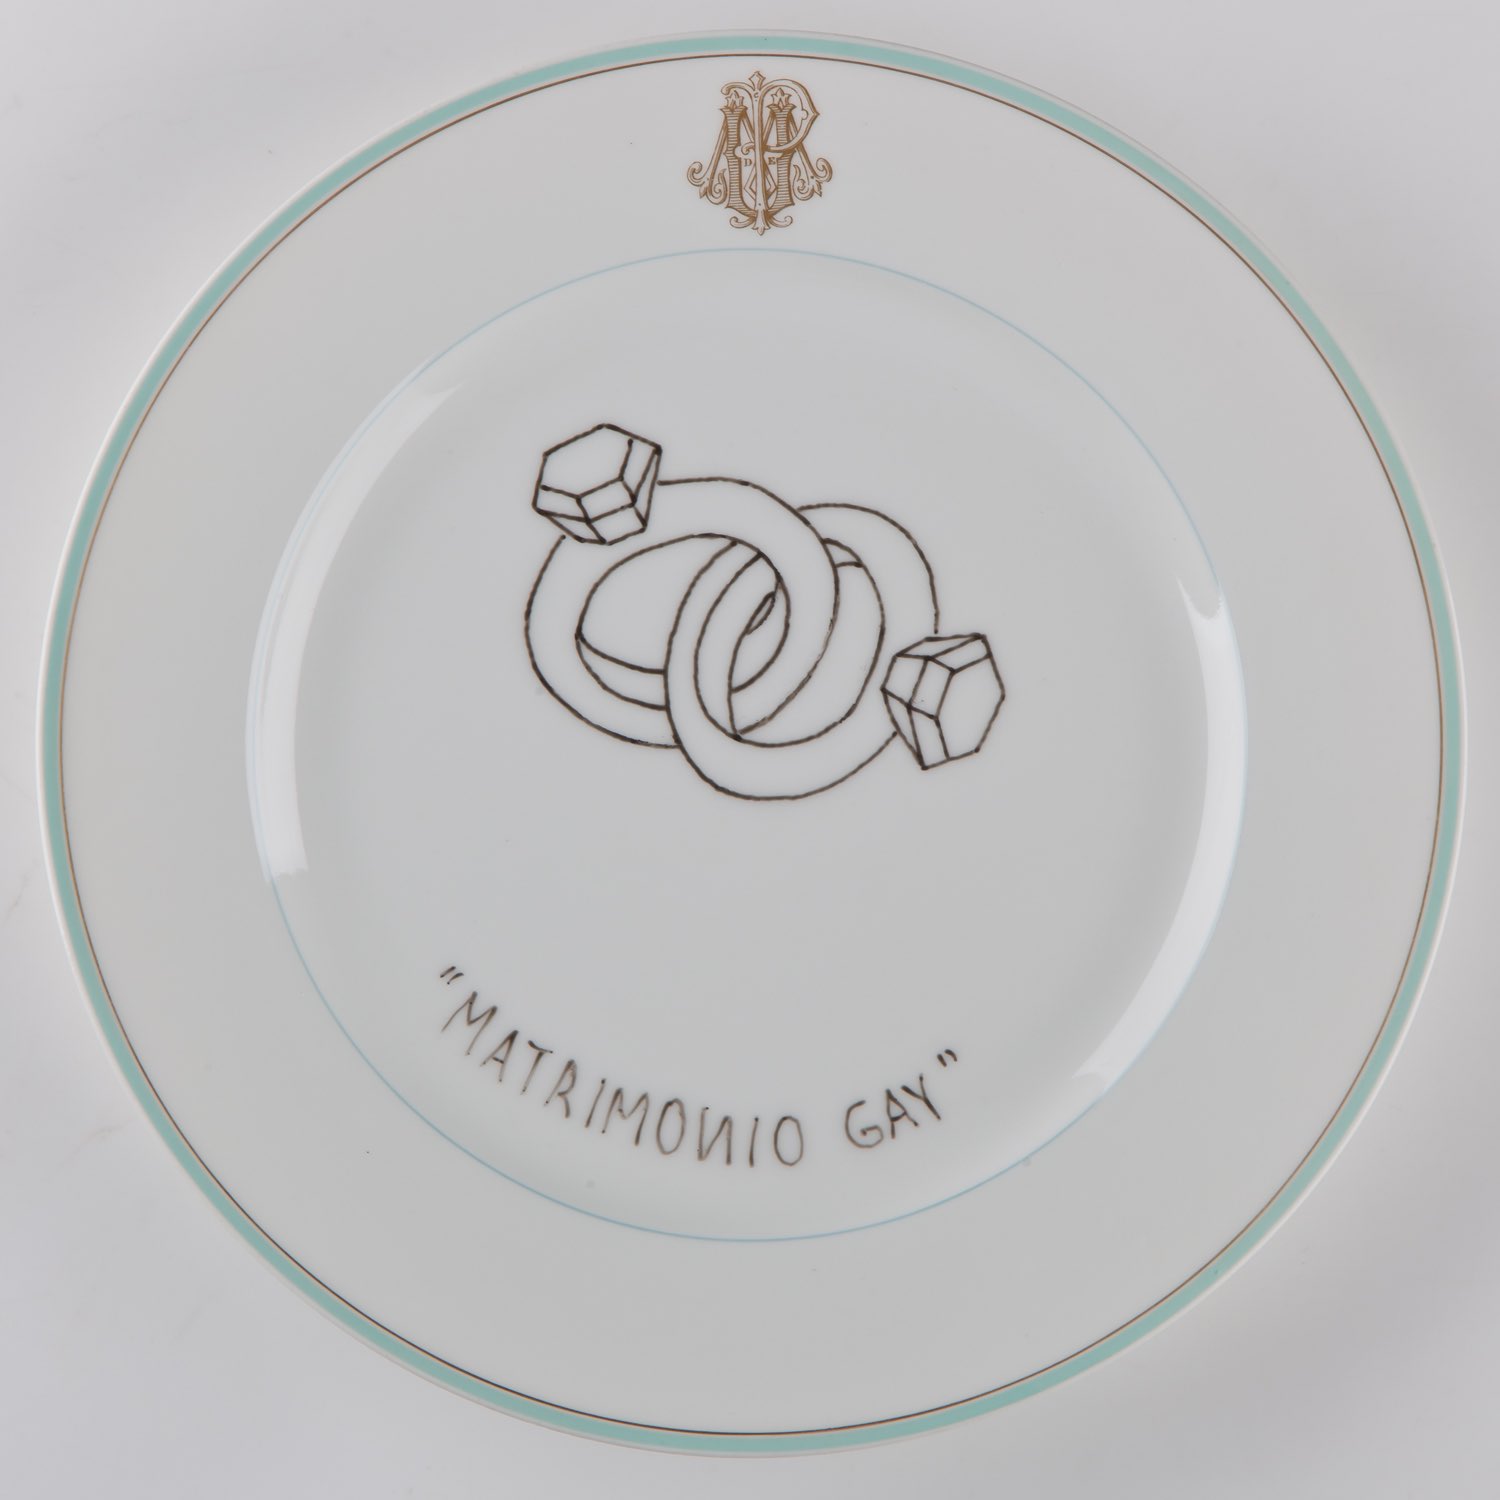   "Matrimonio gay"   Esmalte sobre plato antiguo 25 cm diámetro. 2012    